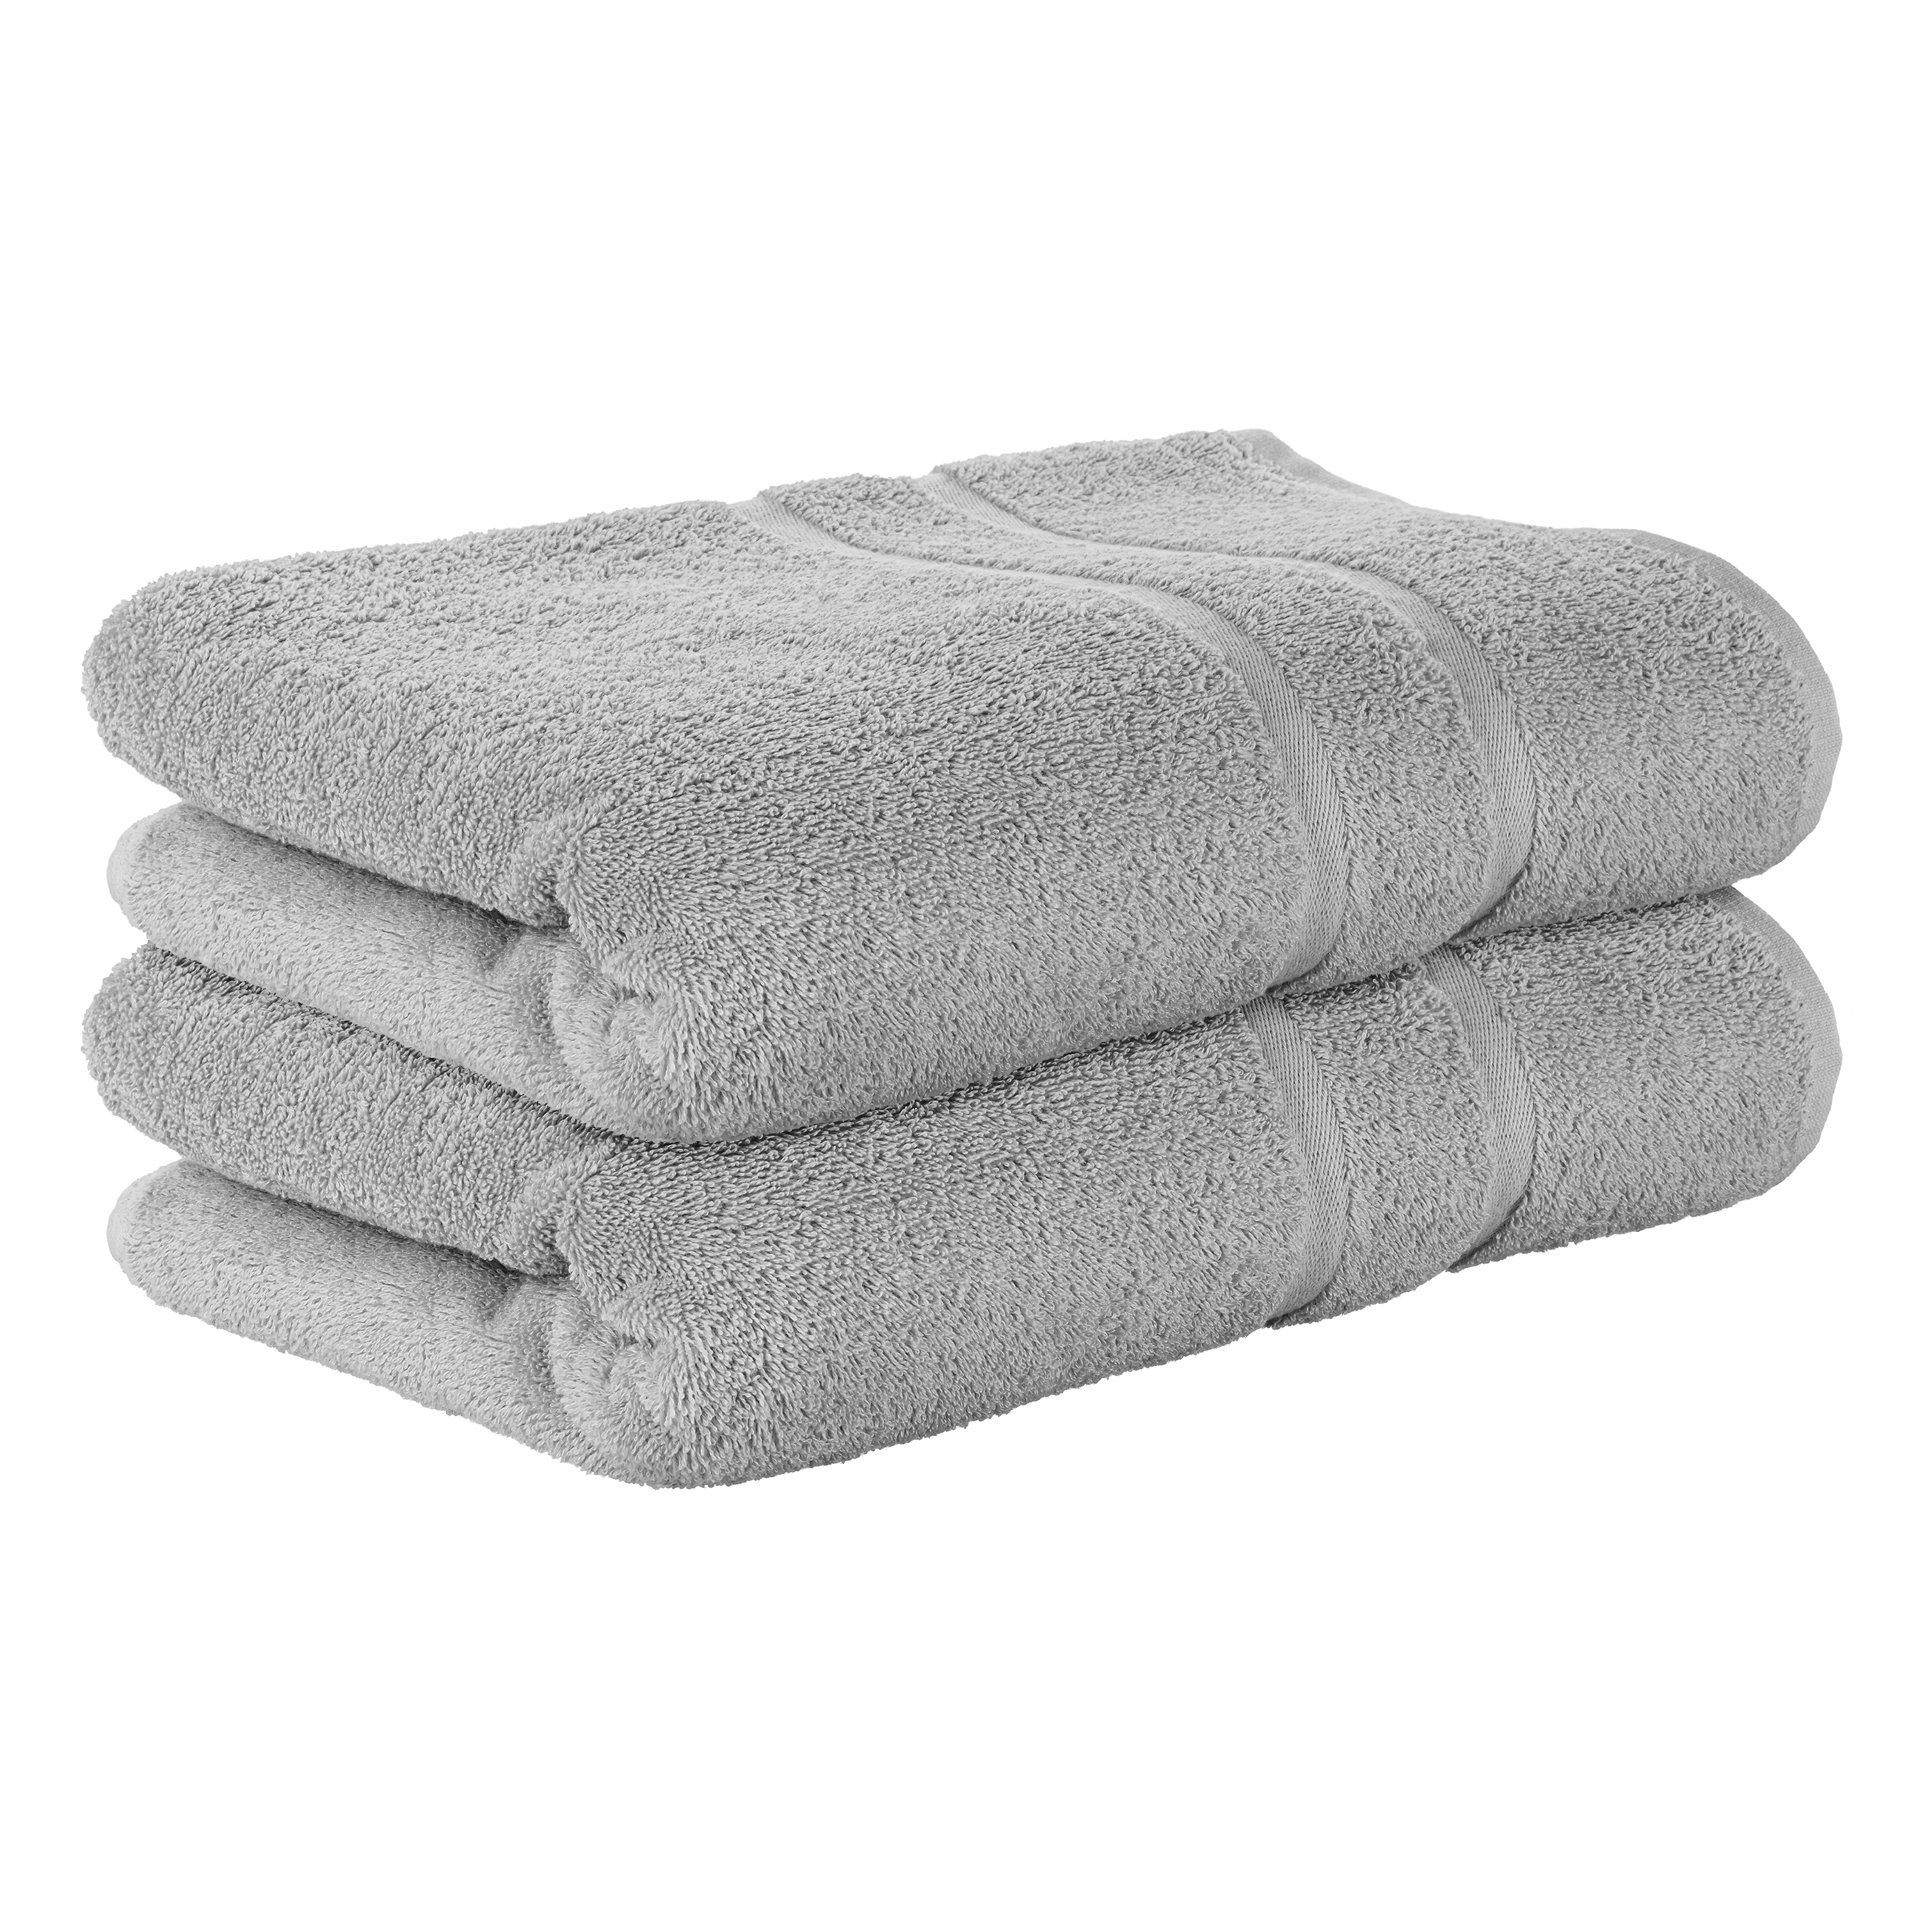 StickandShine Handtuch 2er Set Premium Frottee Handtuch 50x100 cm in 500g/m² aus 100% Baumwolle (2 Stück), 100% Baumwolle 500GSM Frottee Hellgrau